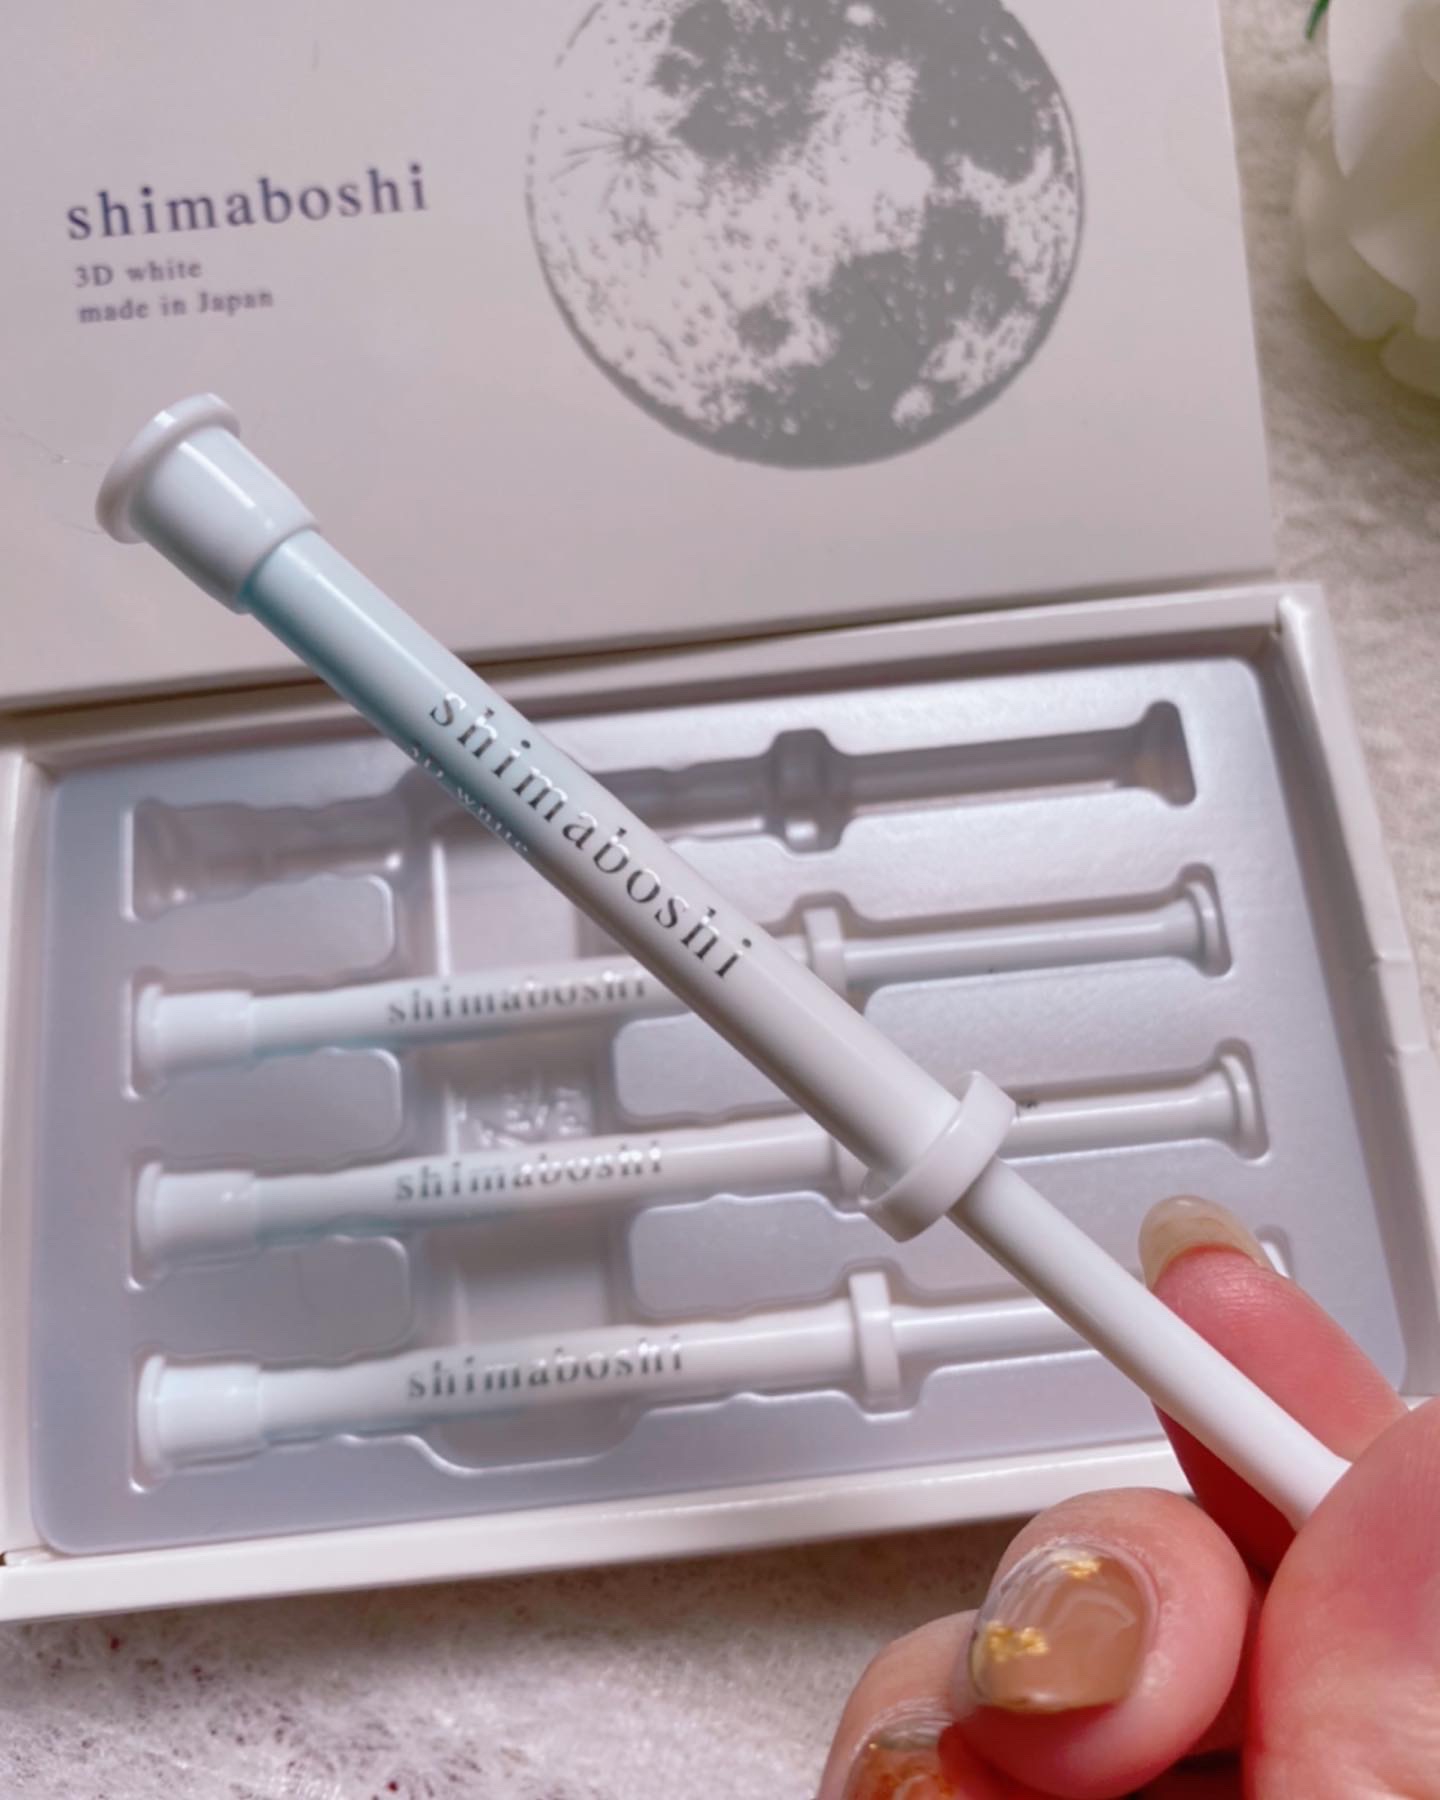 shimaboshi(シマボシ) 3Dホワイトの良い点・メリットに関するfumiさんの口コミ画像2